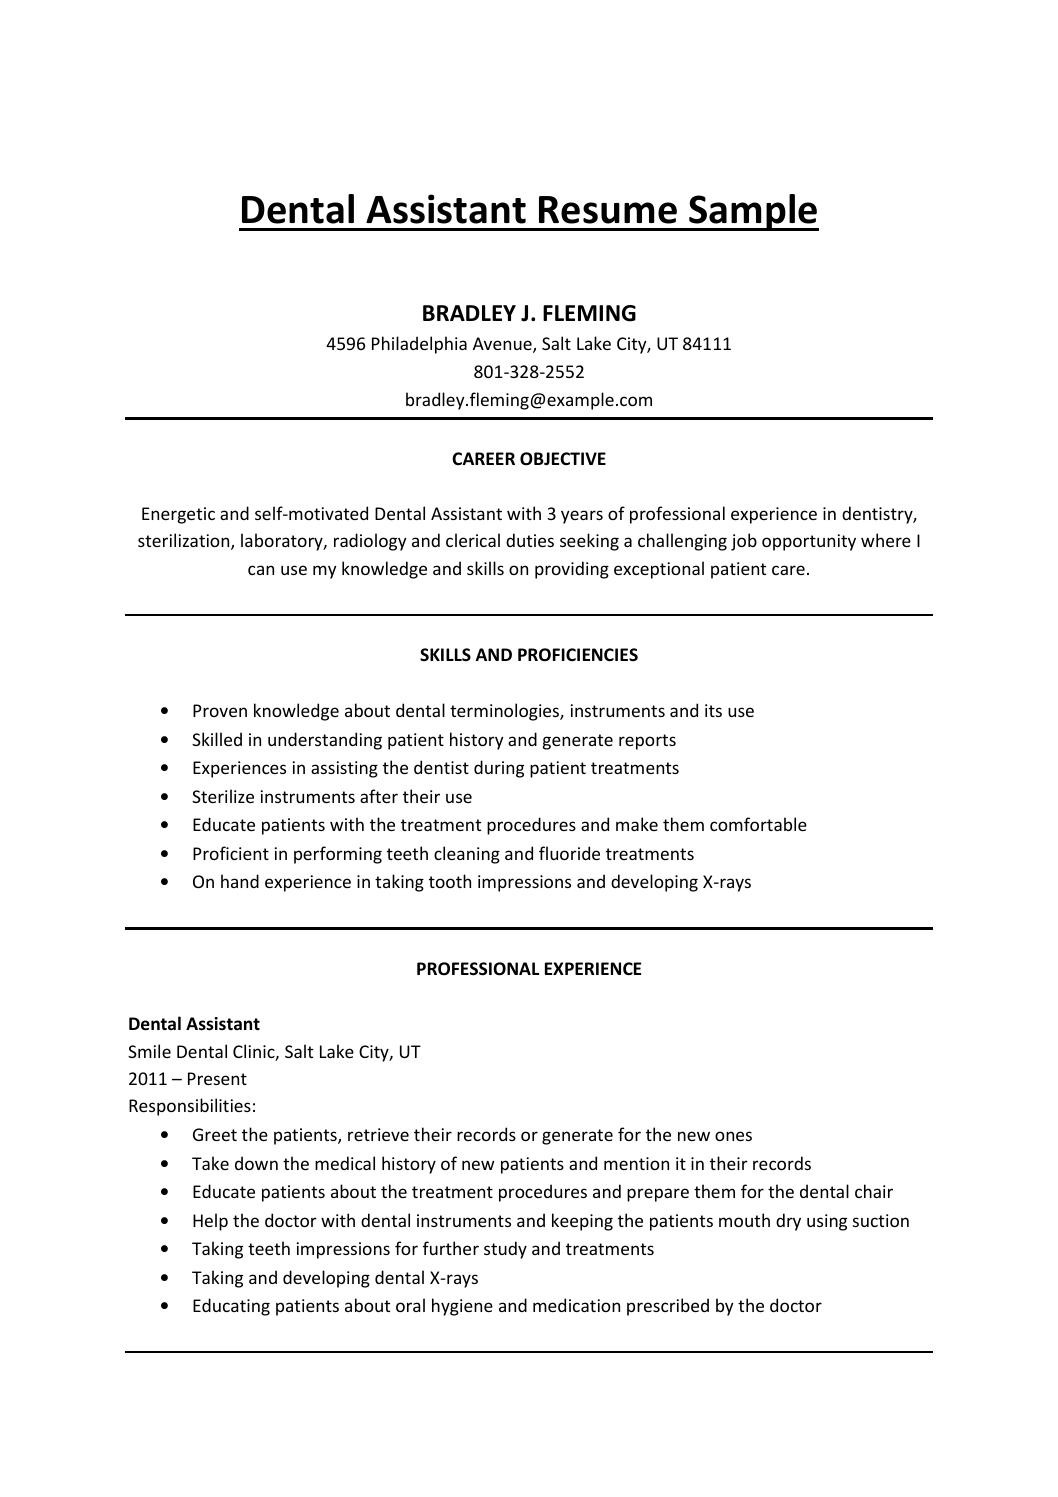 Sample Resume Objectives for Dental assistant Dental assistant Resume Sample by Mark Stone – issuu